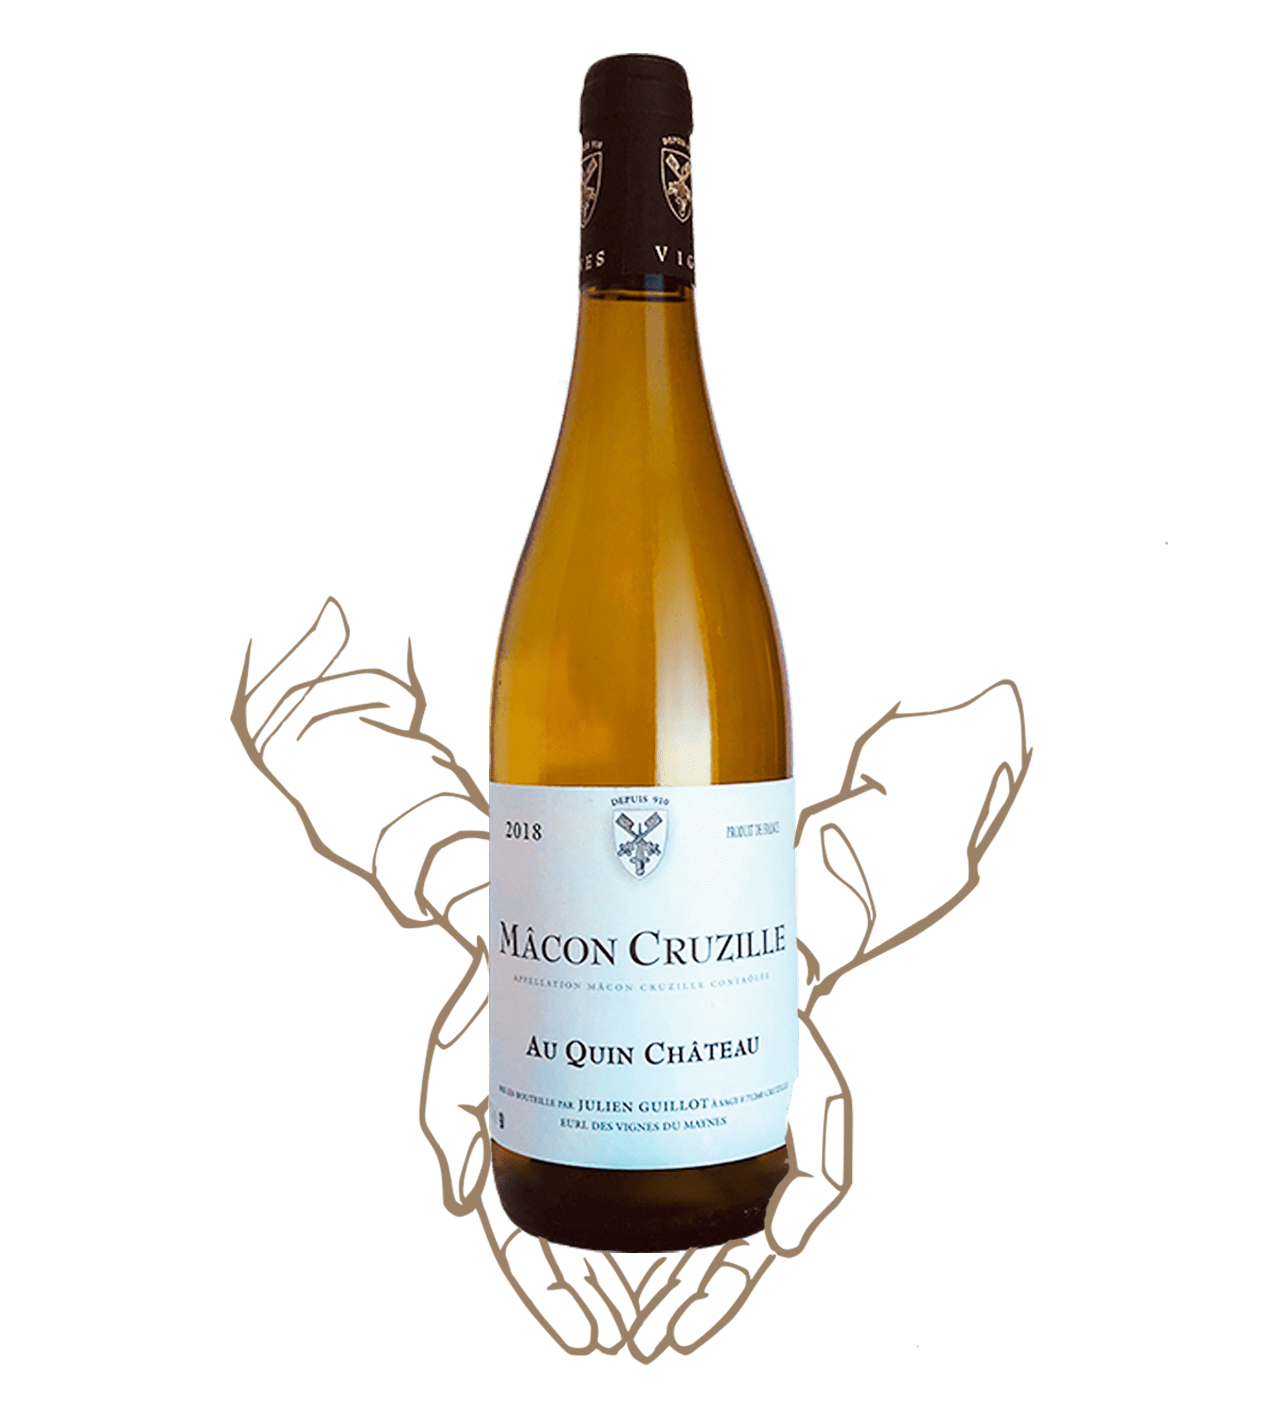 Au quin chateau by le clos des vignes du maynes is a natural wine